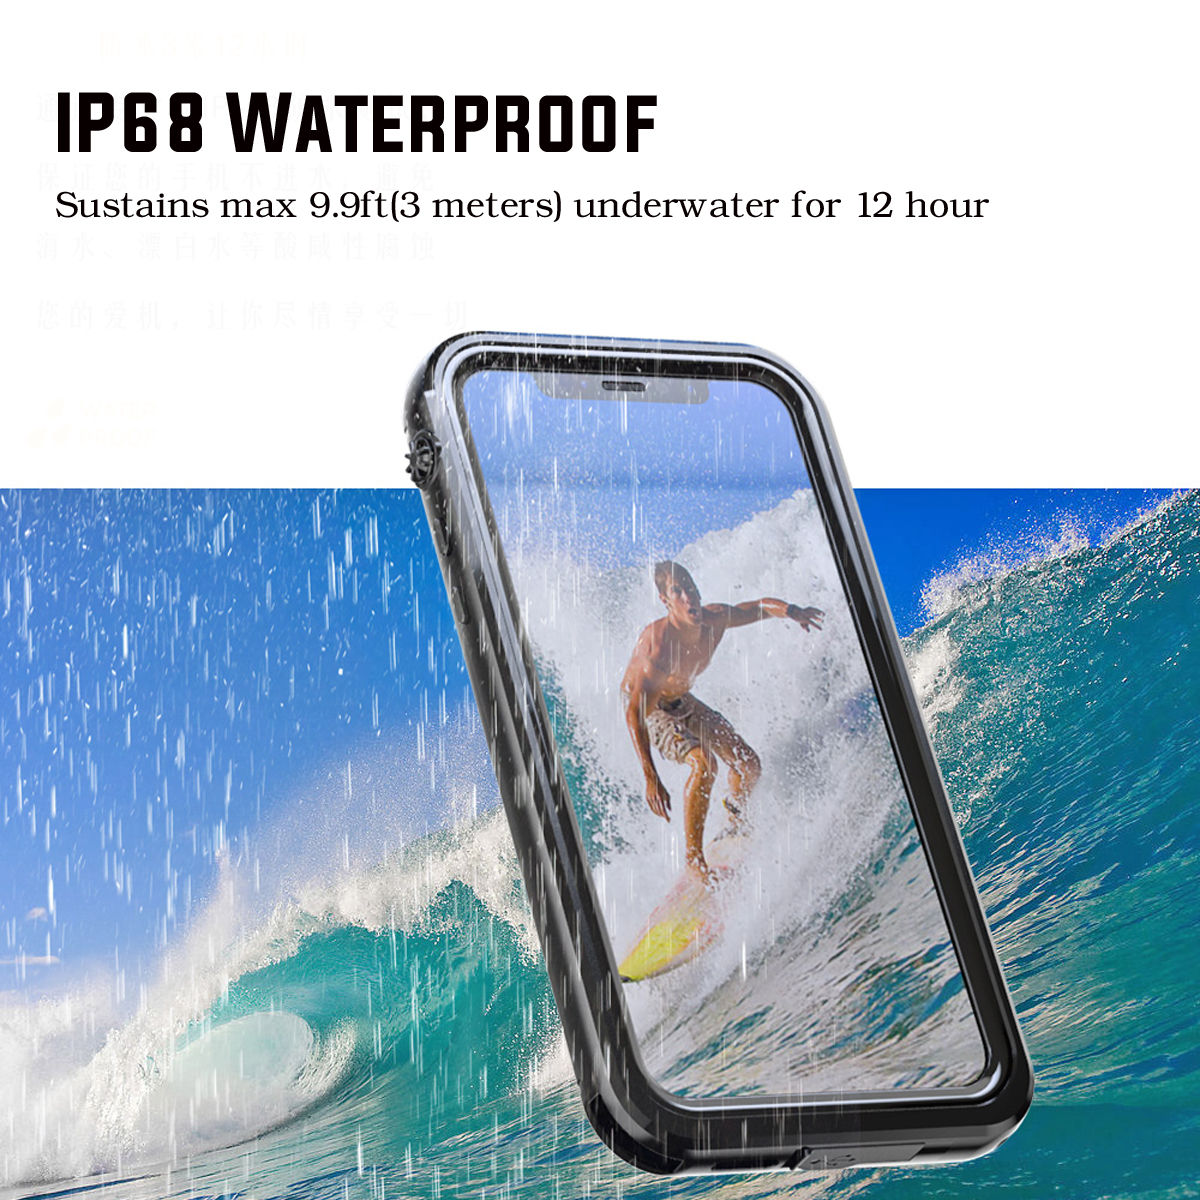 IP68-WaterproofDirtproofSnowproofShockproof-Protective-Case-For-iPhone-X-1330384-2